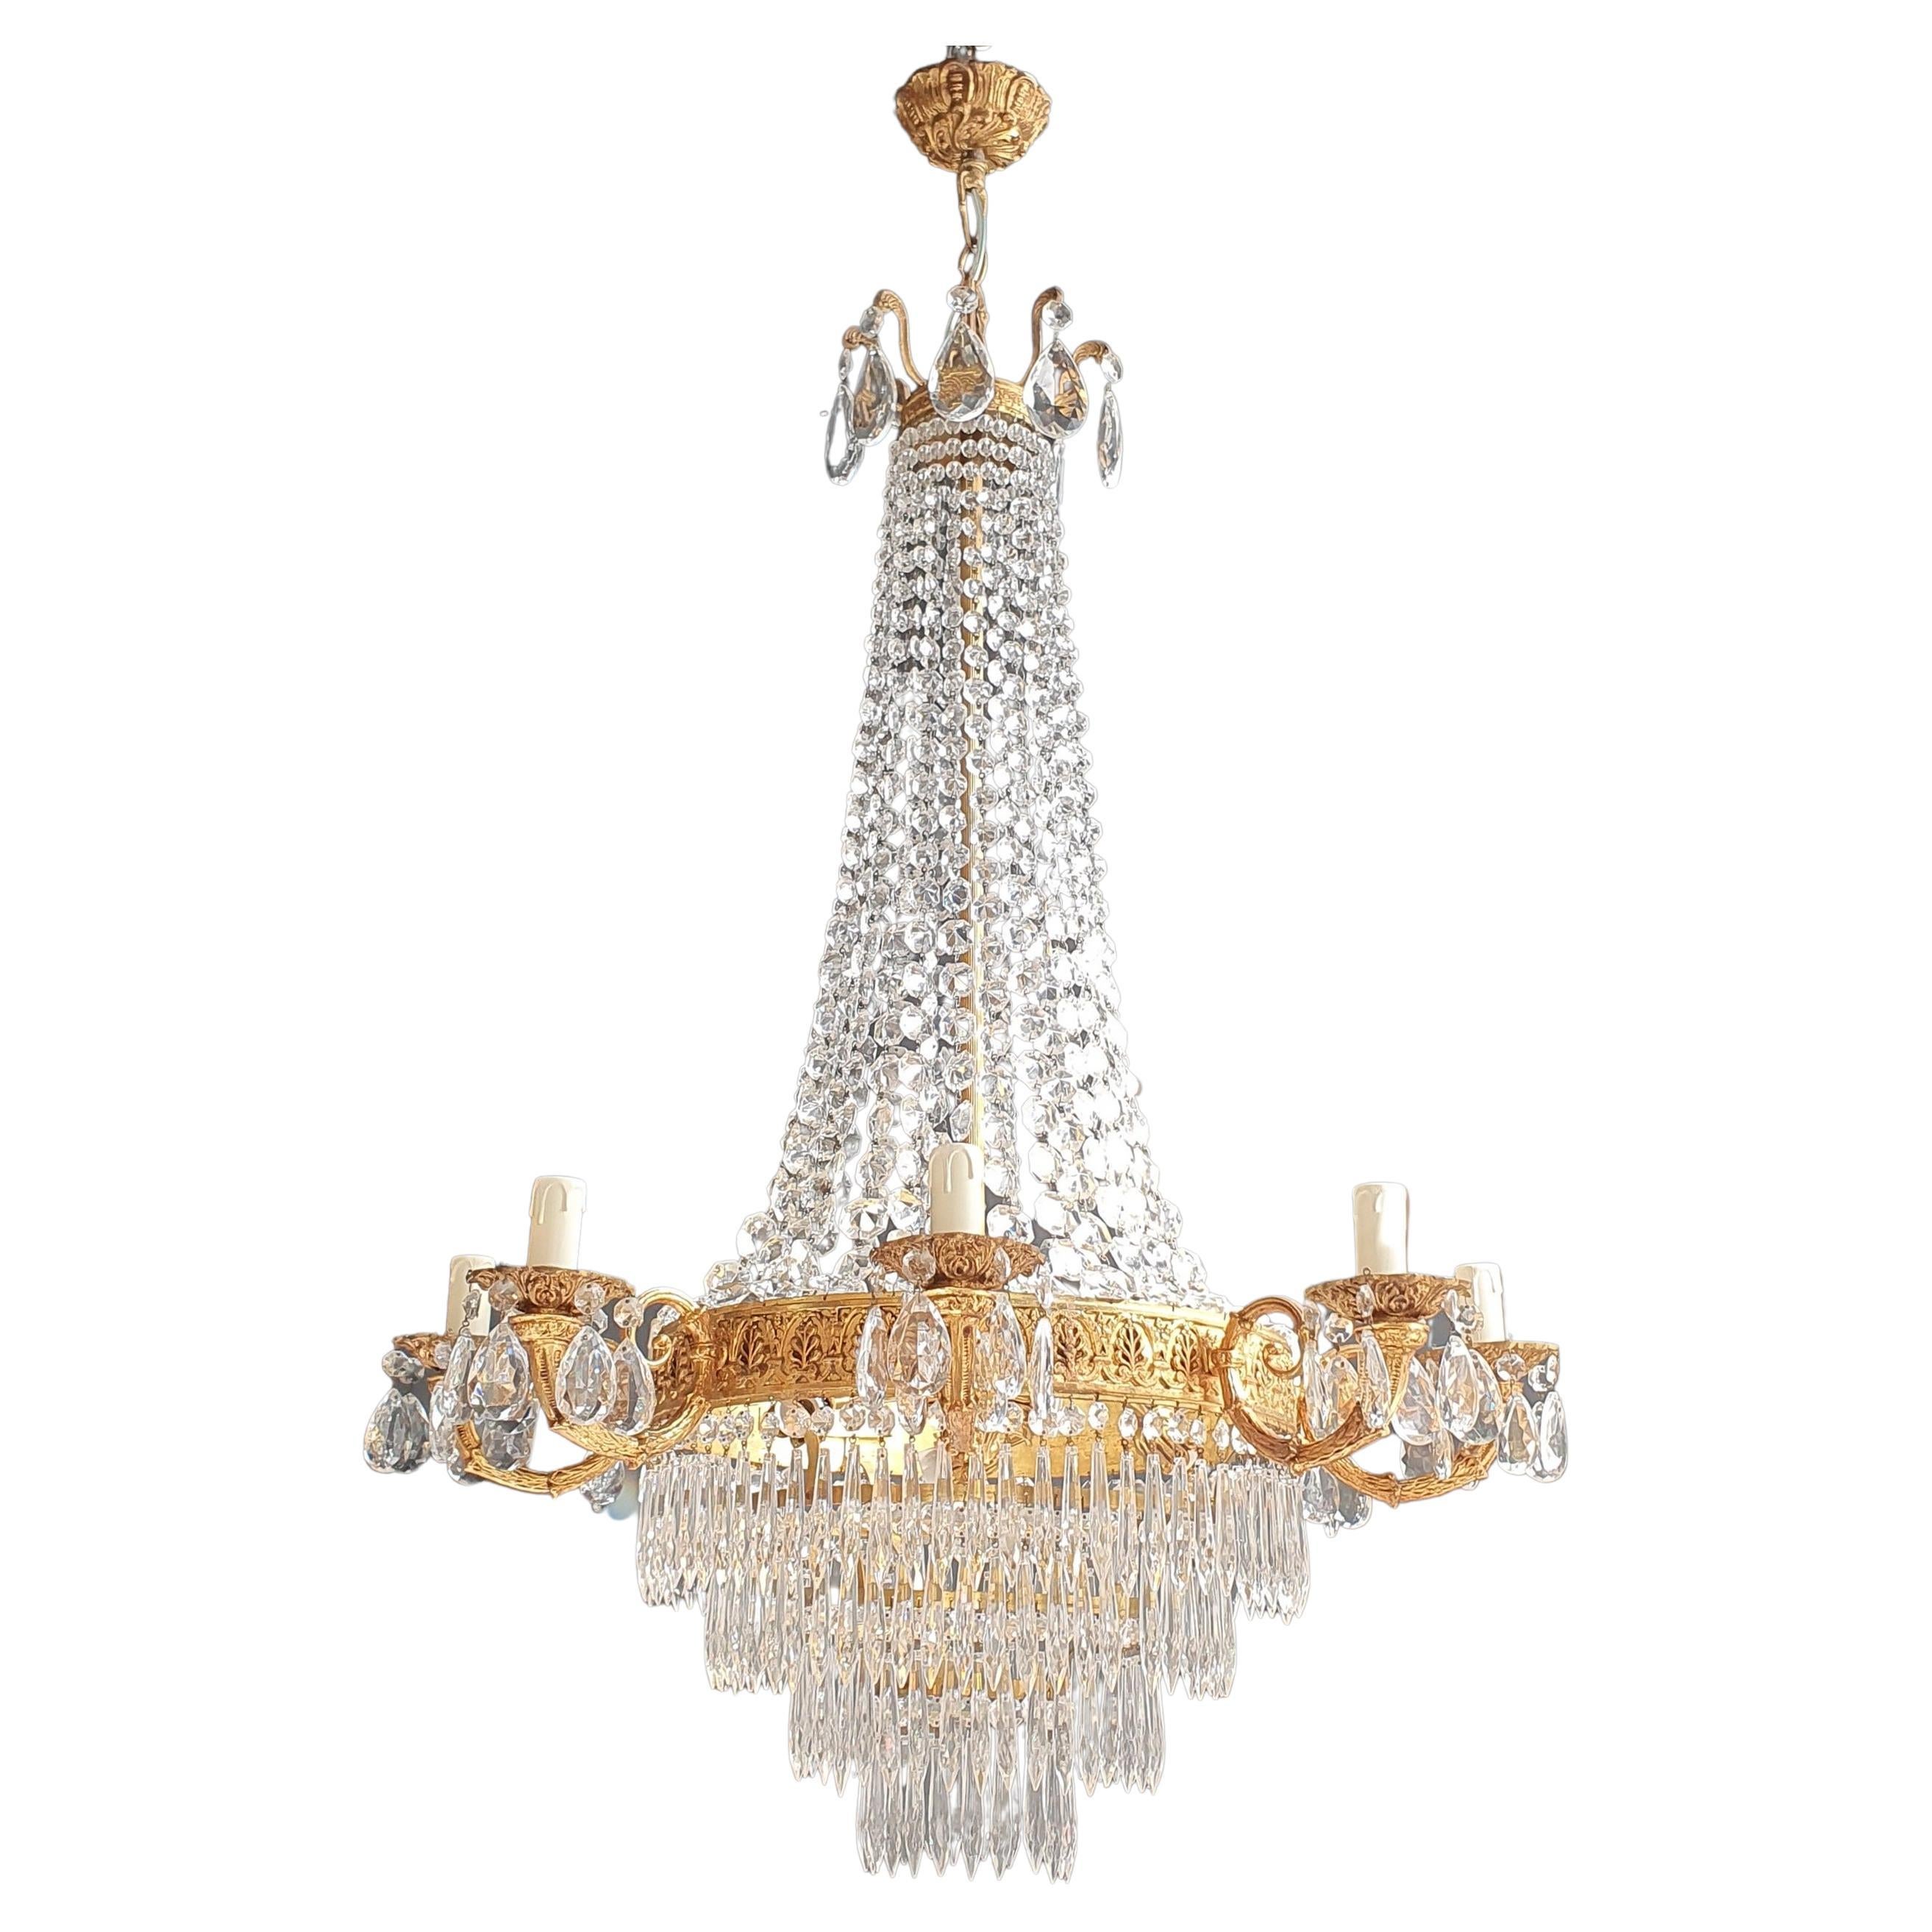 Basket chandelier crystal lighting ceiling lamp candelabra lustre brass drops 